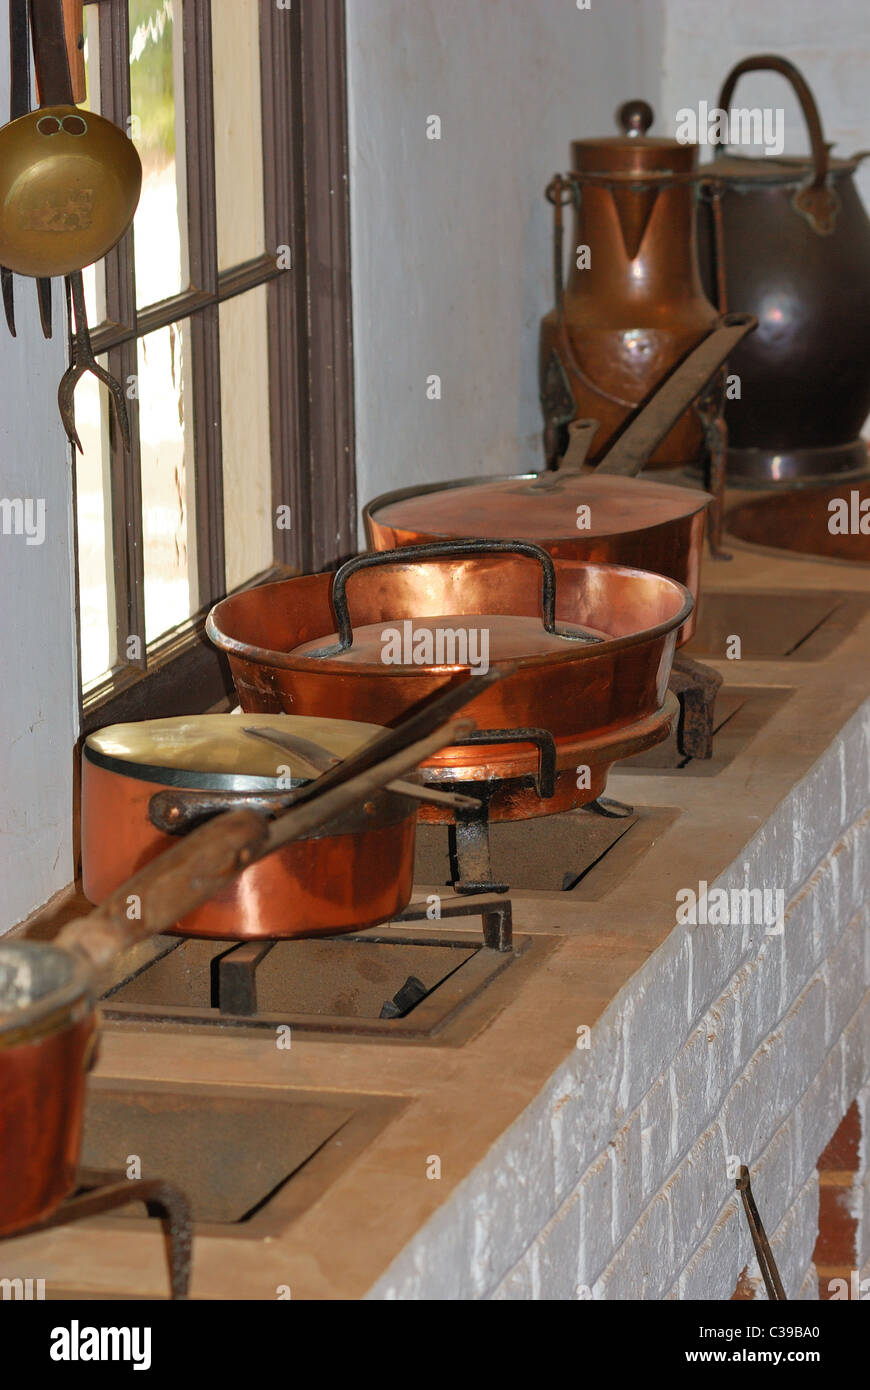 1800er jahre küche -Fotos und -Bildmaterial in hoher Auflösung – Alamy